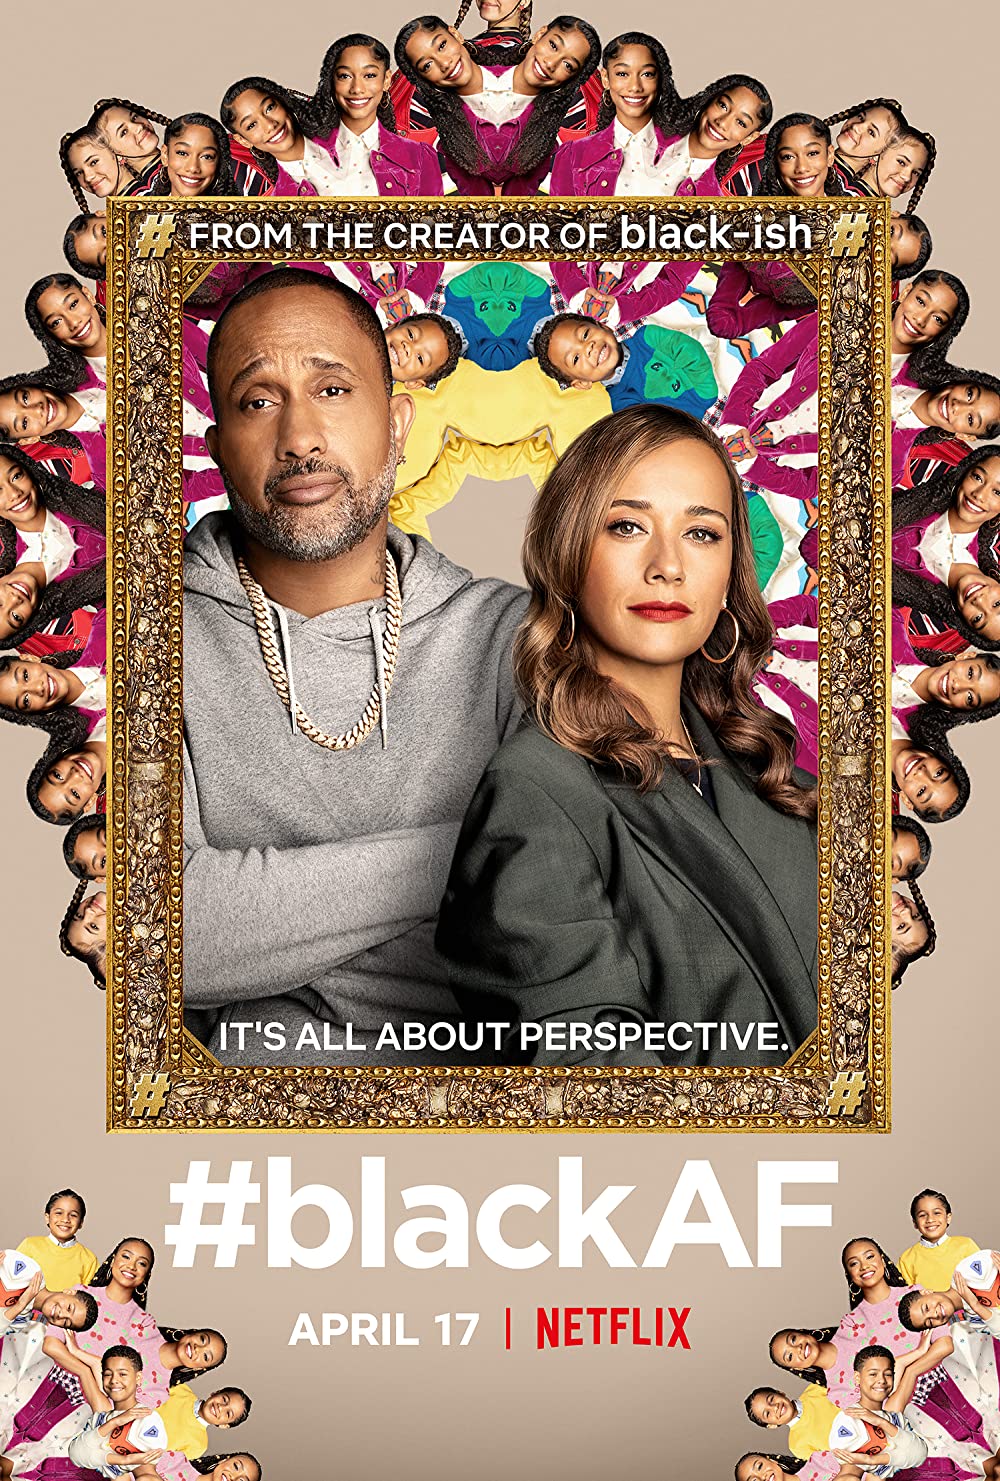 Filmbeschreibung zu #BlackAF